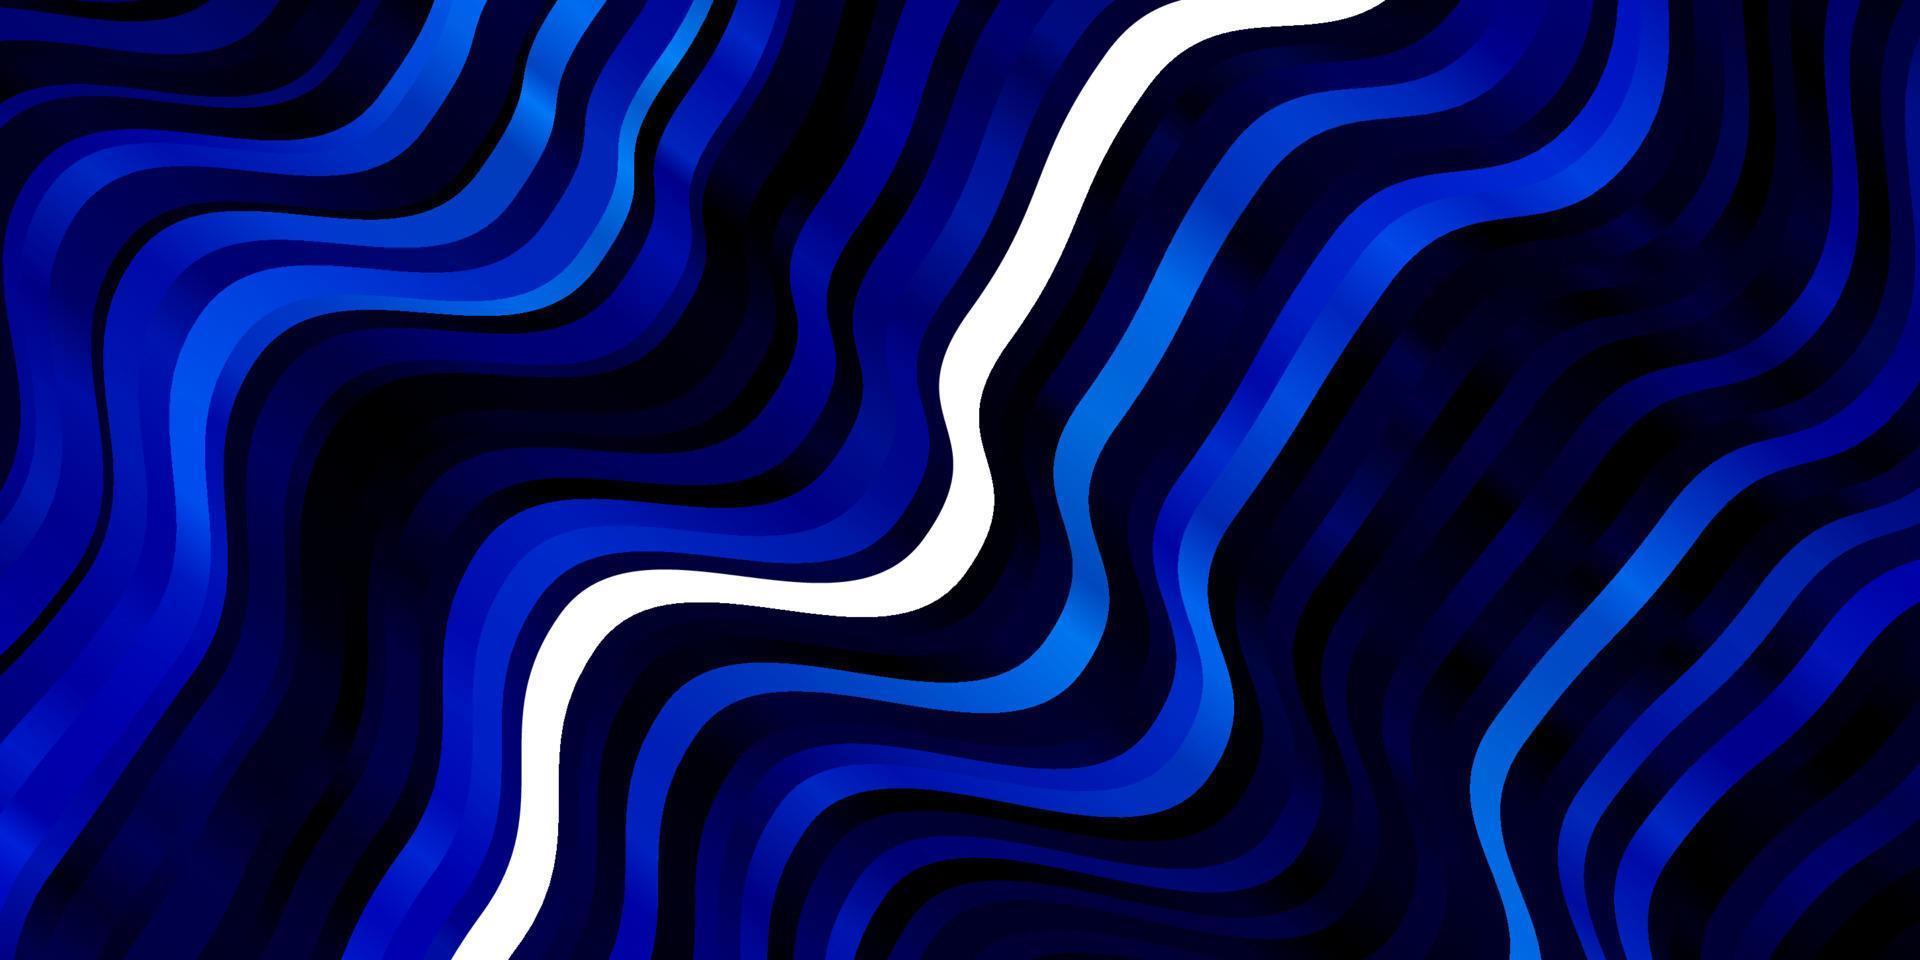 sfondo vettoriale blu scuro con arco circolare.